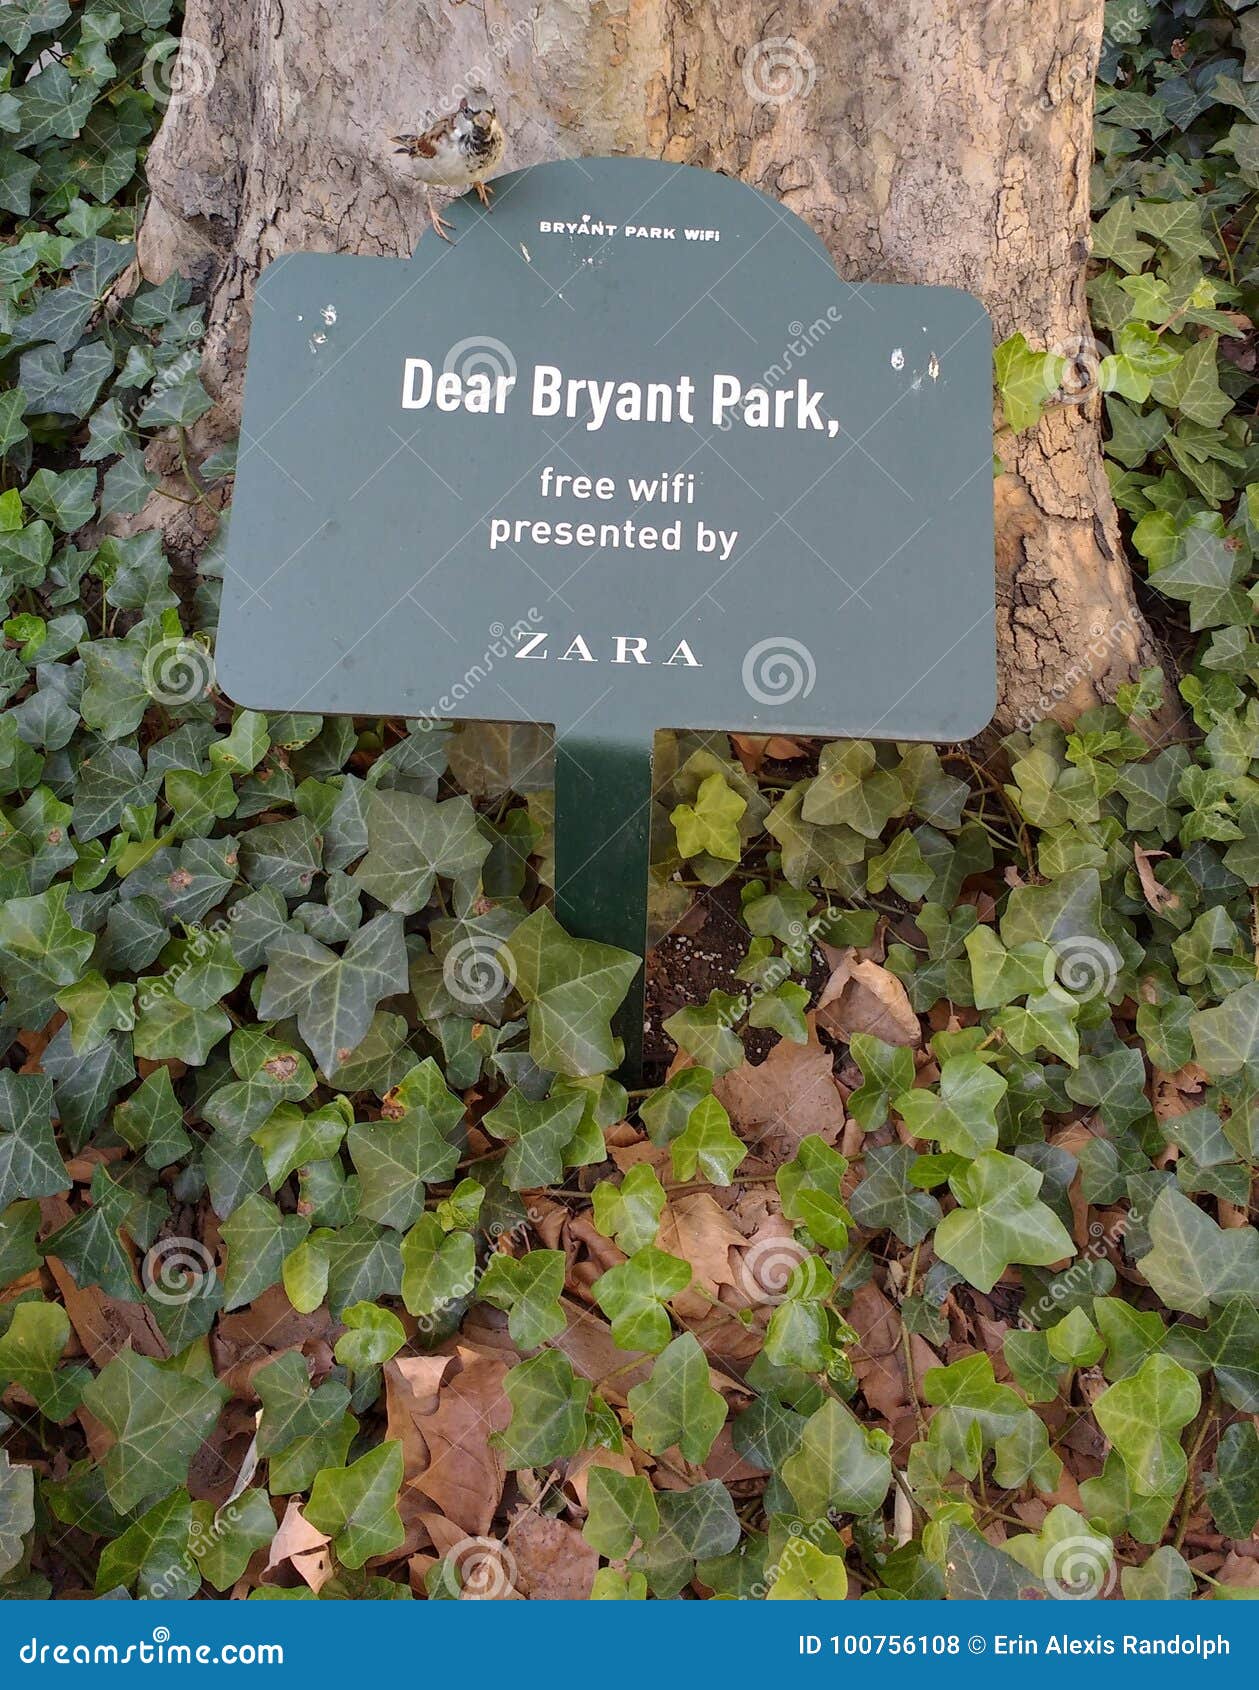 zara near bryant park